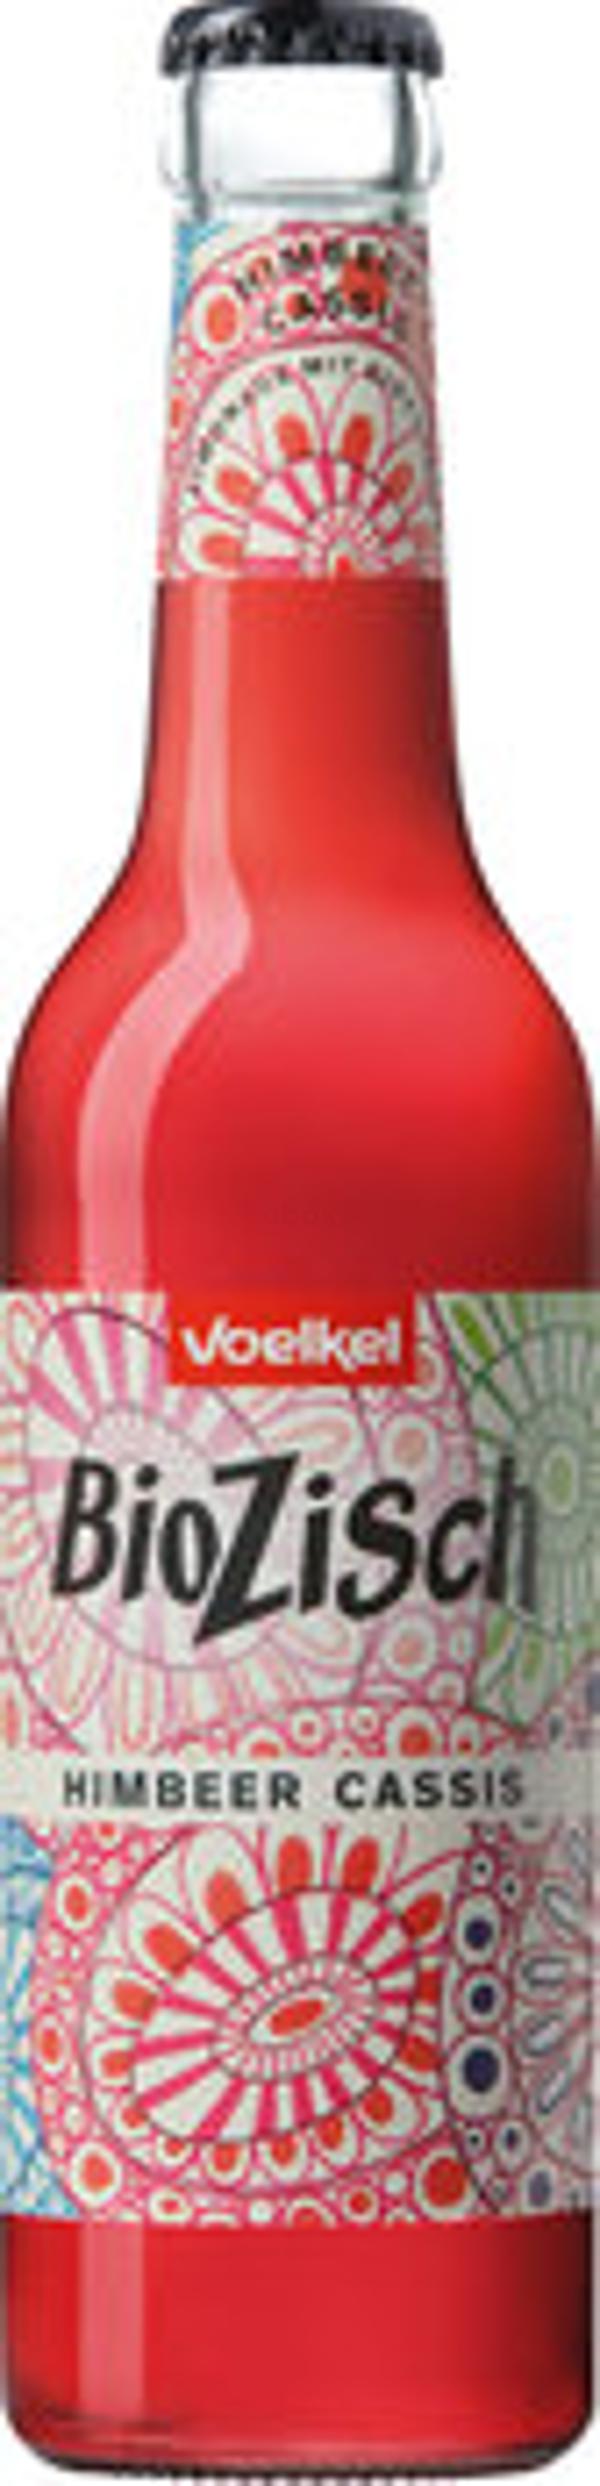 Produktfoto zu BioZisch Himbeer-Cassis, 0,33l